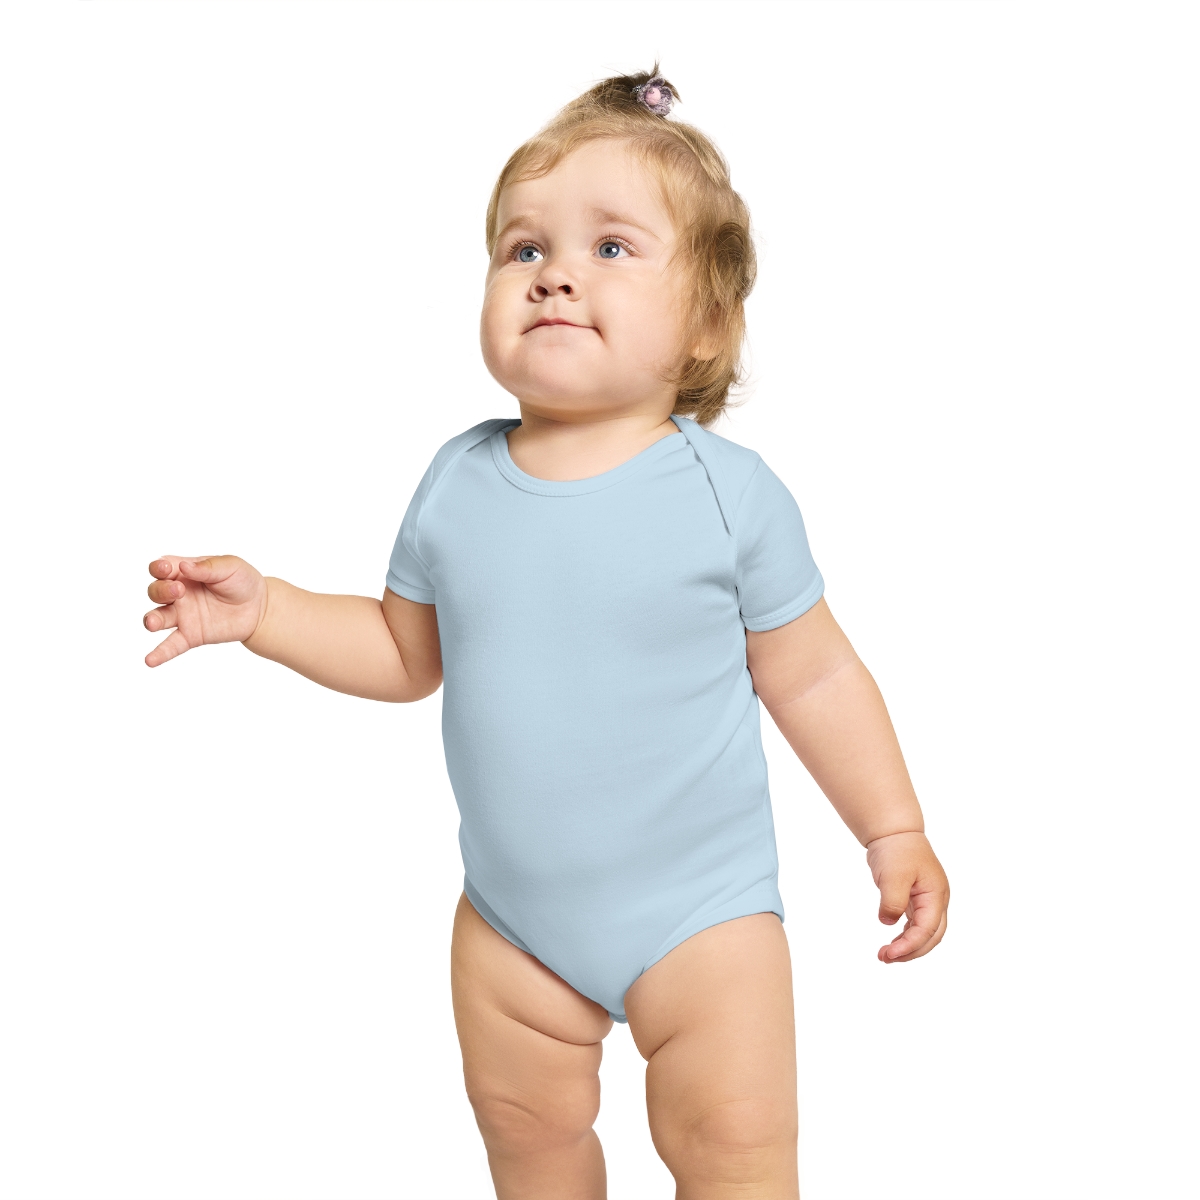 𝙃𝙄𝙂𝙃𝙑𝙊𝙇𝙐𝙈𝙀 𝙈𝙐𝙎𝙄𝘾 𝙇𝙄𝙑𝙀 Baby Bodysuit product thumbnail image